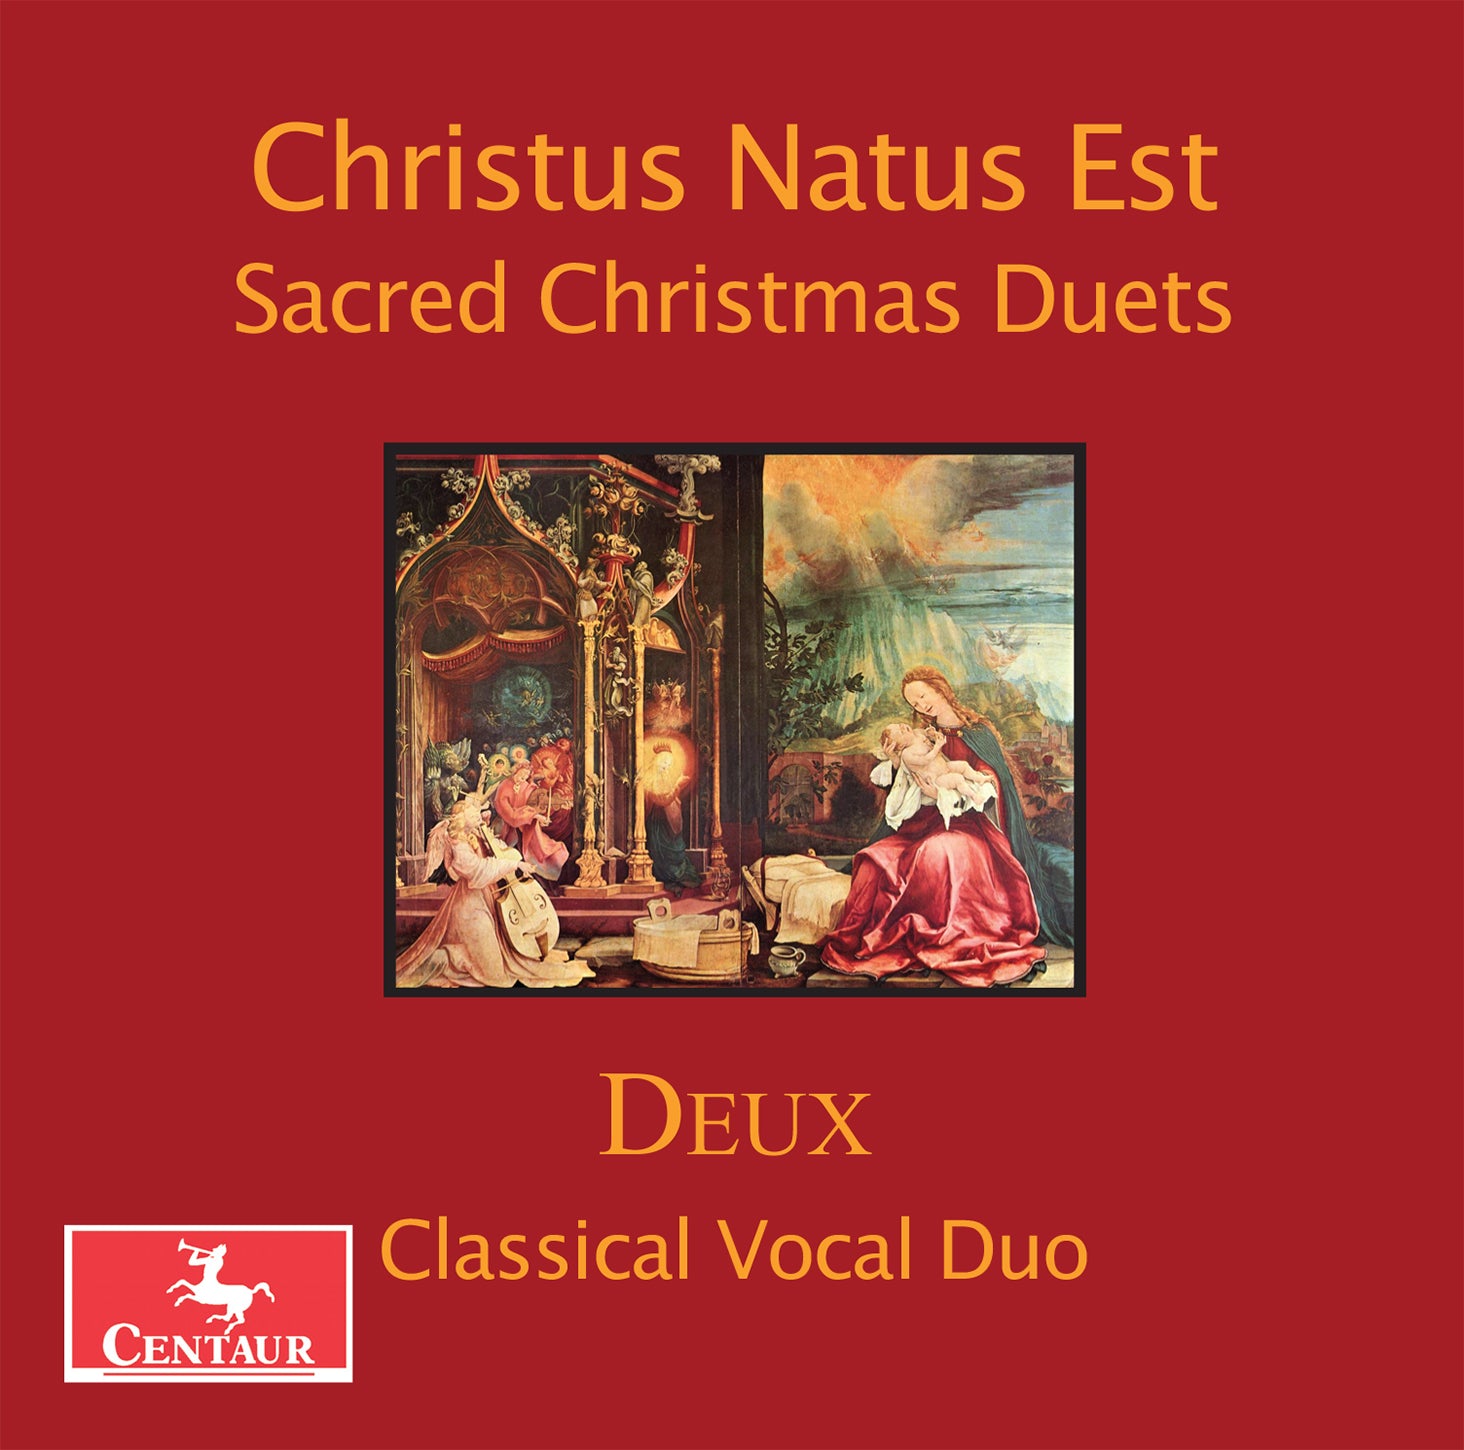 Christus Natus Est: Sacred Christmas Duets / Deux Classical Vocal Duo